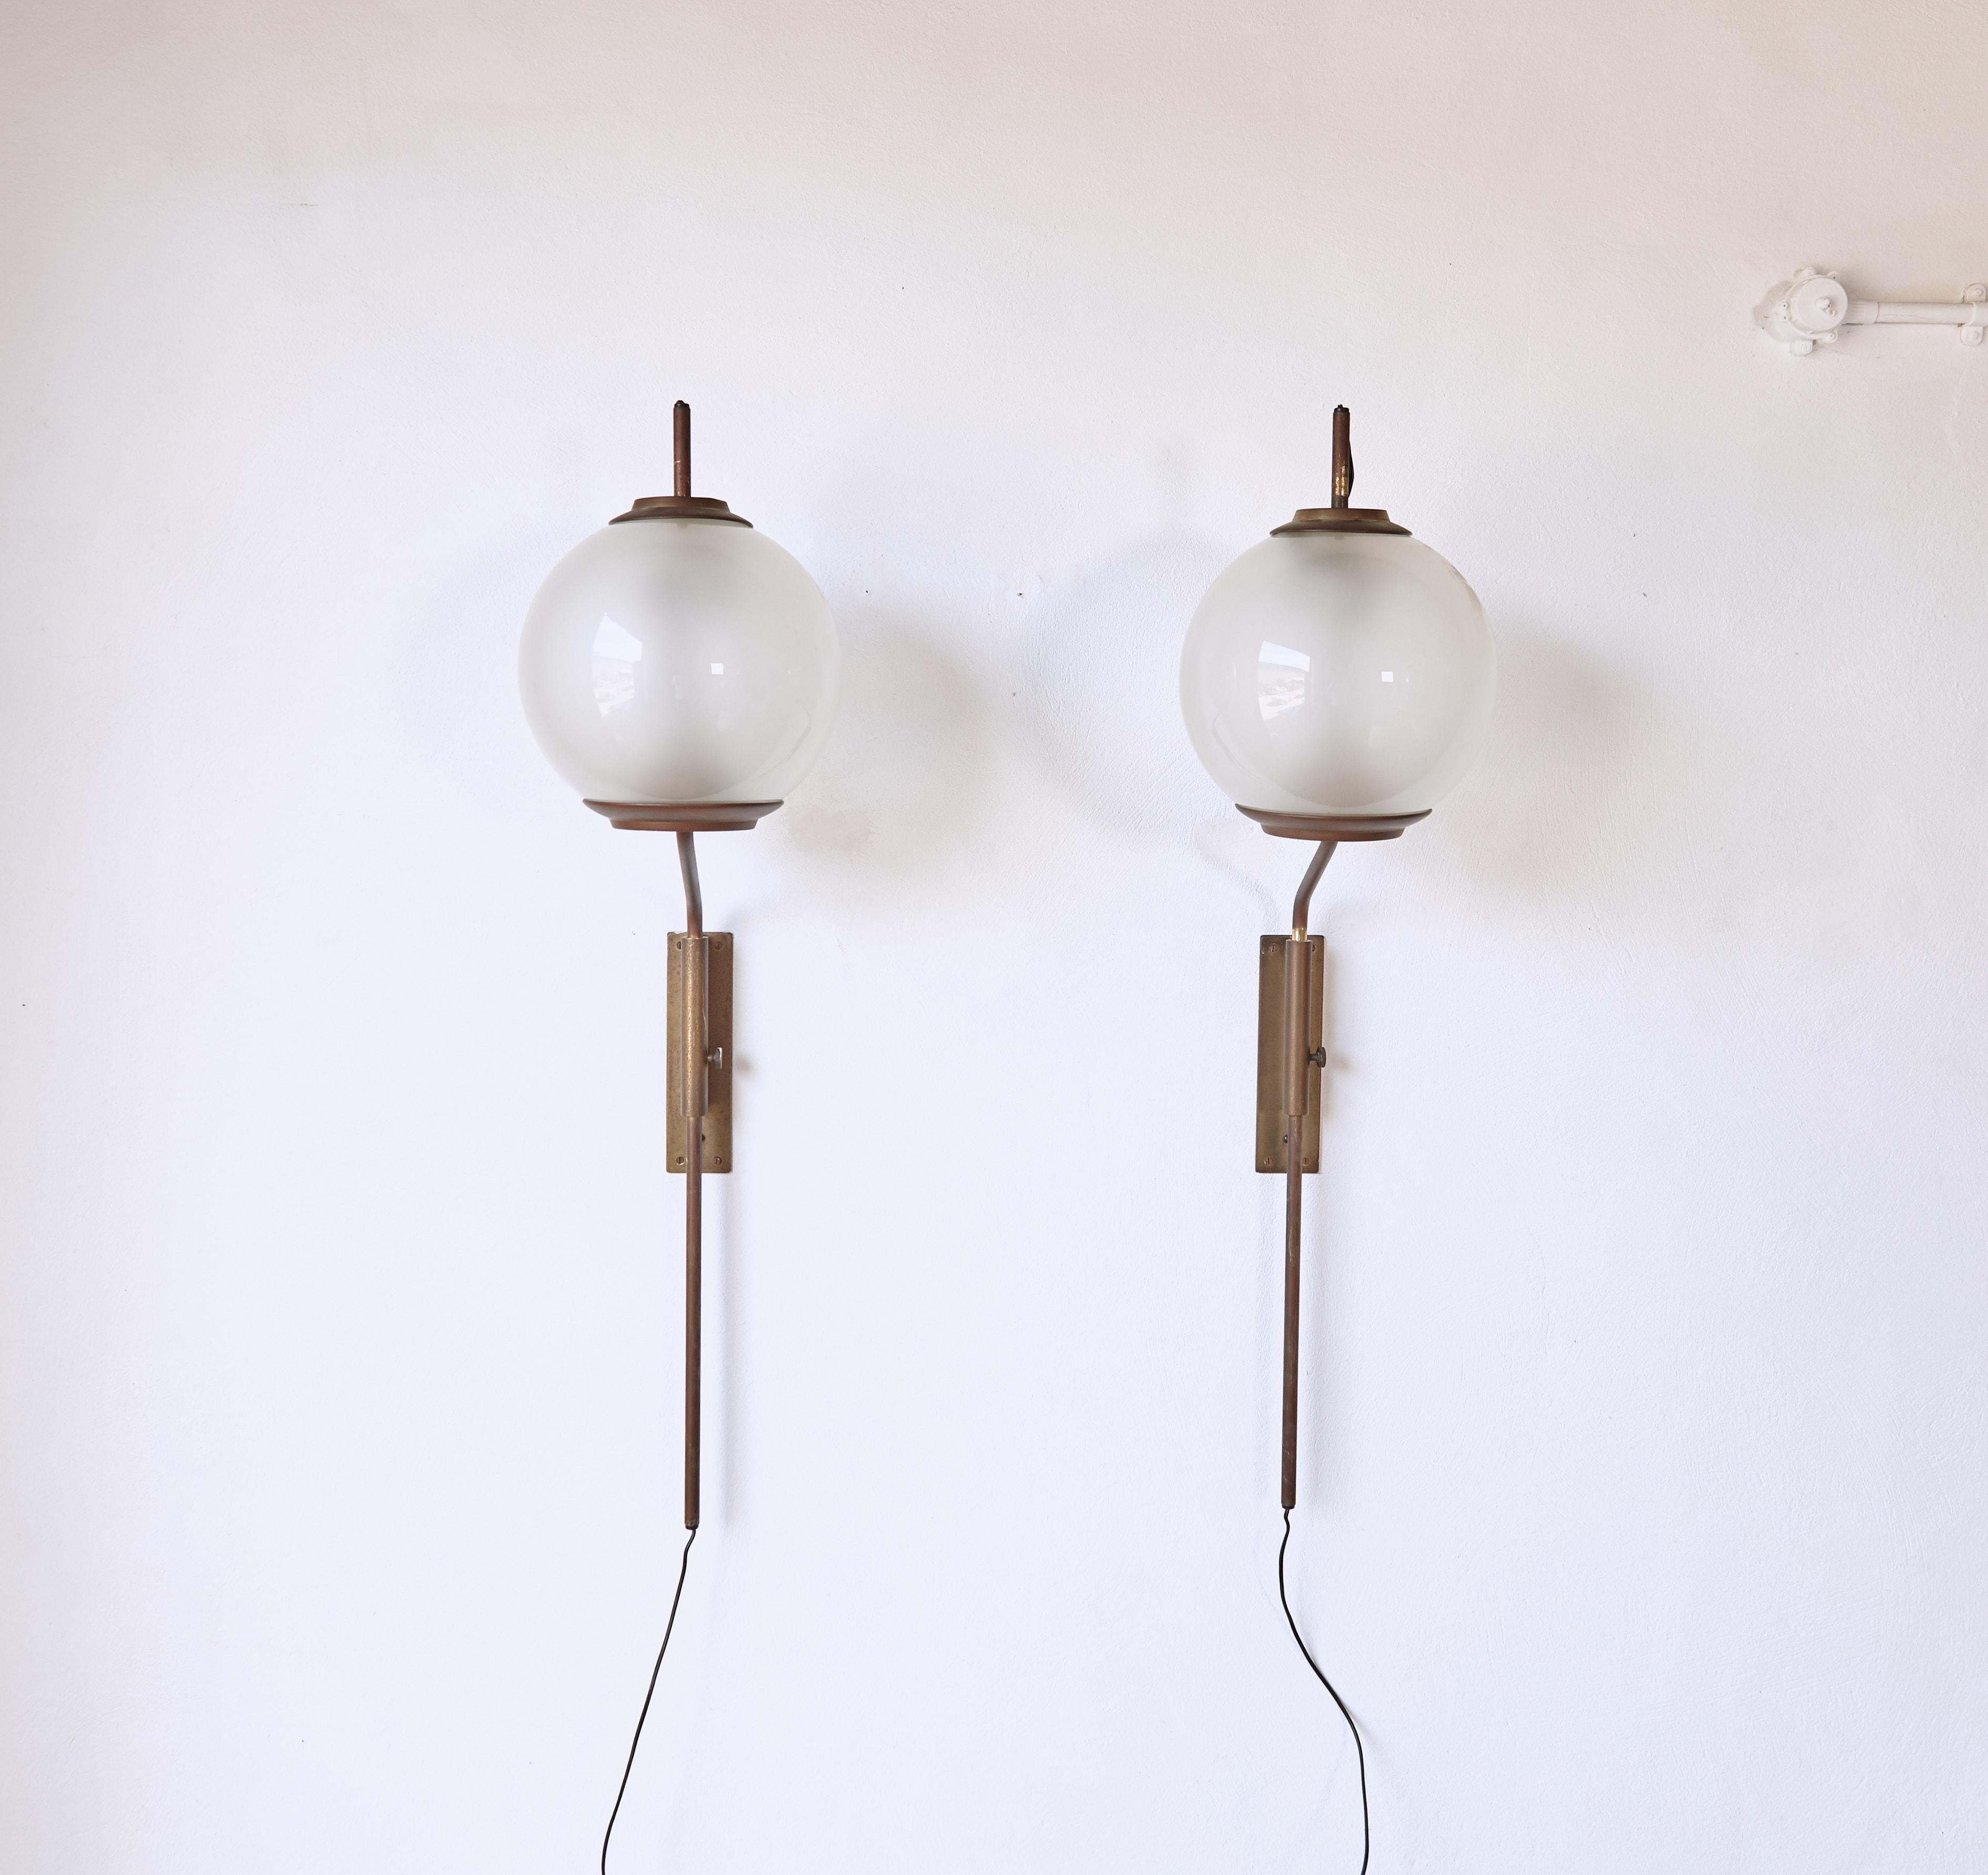 Ein elegantes originales Paar Luigi Caccia Dominioni LP11 / Pallone Wandlampen, hergestellt von Azucena, Italien, in den 1950er Jahren.  Gestell aus Messing und Schirm aus Opalglas.  Es ist möglich, die Lampenarme nach oben und unten und von links